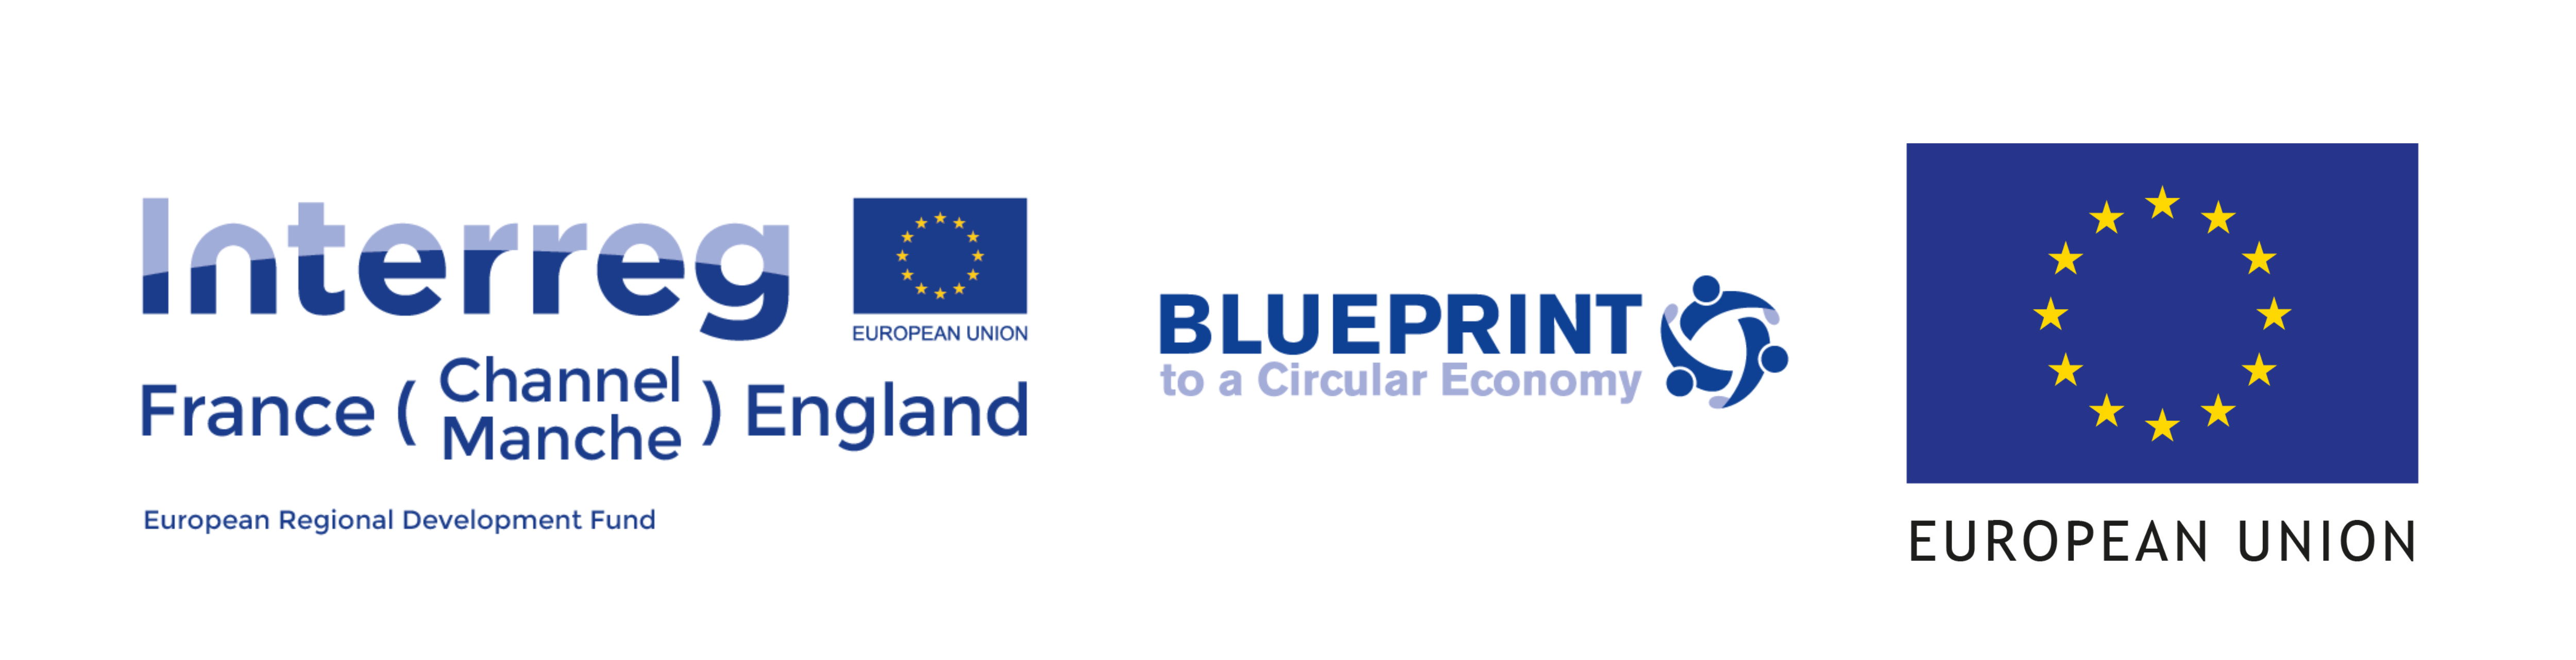 Blueprint to a Circular Economy